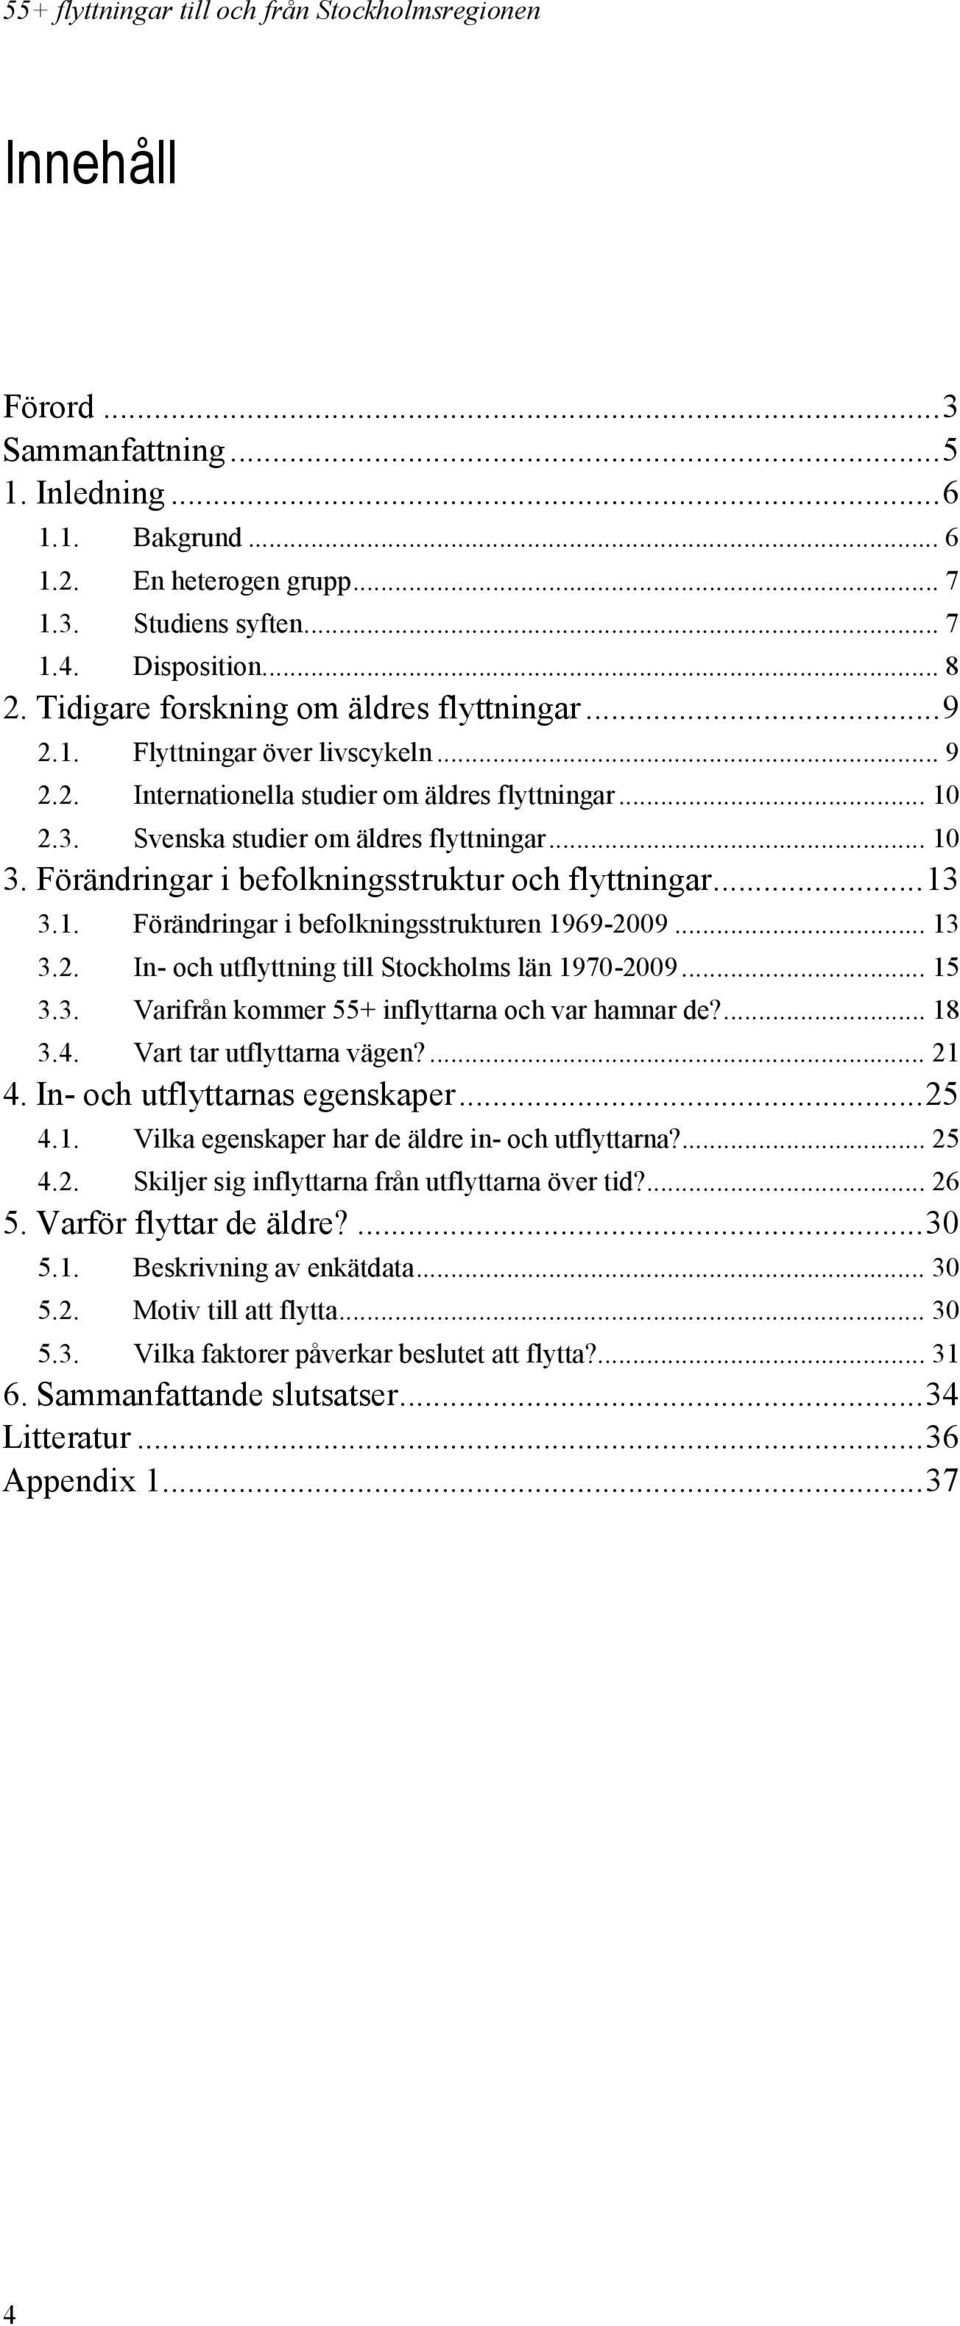 Förändringar i befolkningsstruktur och flyttningar... 13 3.1. Förändringar i befolkningsstrukturen 1969-2009... 13 3.2. In- och utflyttning till Stockholms län 1970-2009... 15 3.3. Varifrån kommer 55+ inflyttarna och var hamnar de?